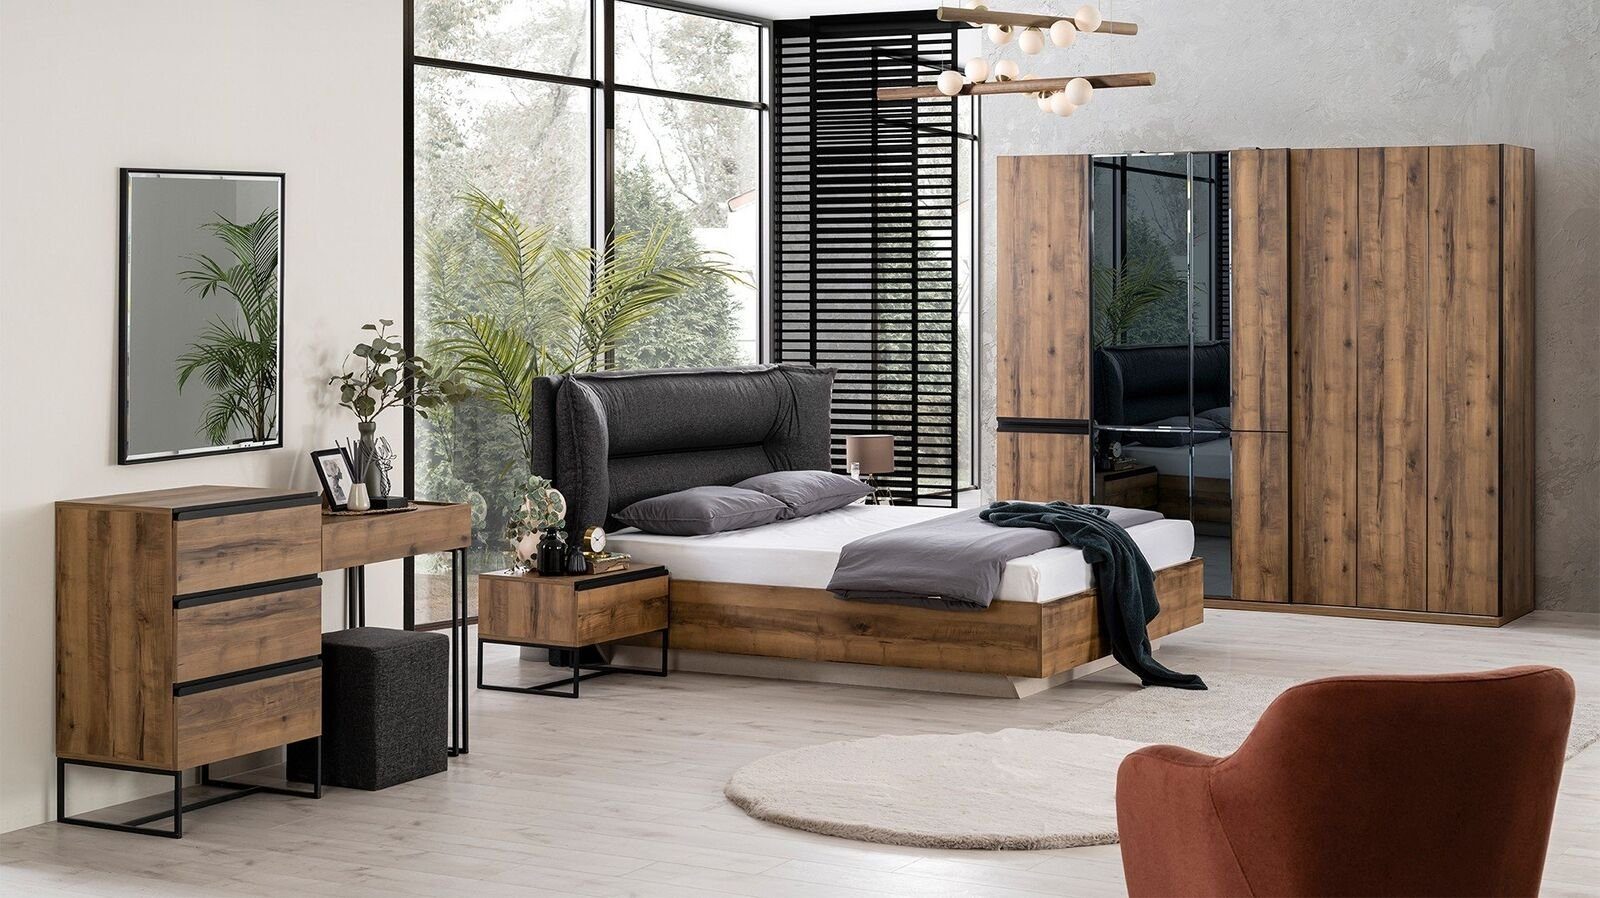 JVmoebel Schlafzimmer-Set Luxus Schlafzimmer Garnitur Doppelbett Bett Holz Set 7tlg Braun Modern, (Bett/Nachttische/Kleiderschrank/Kommode/Spiegel/Hocker), Made In Europe